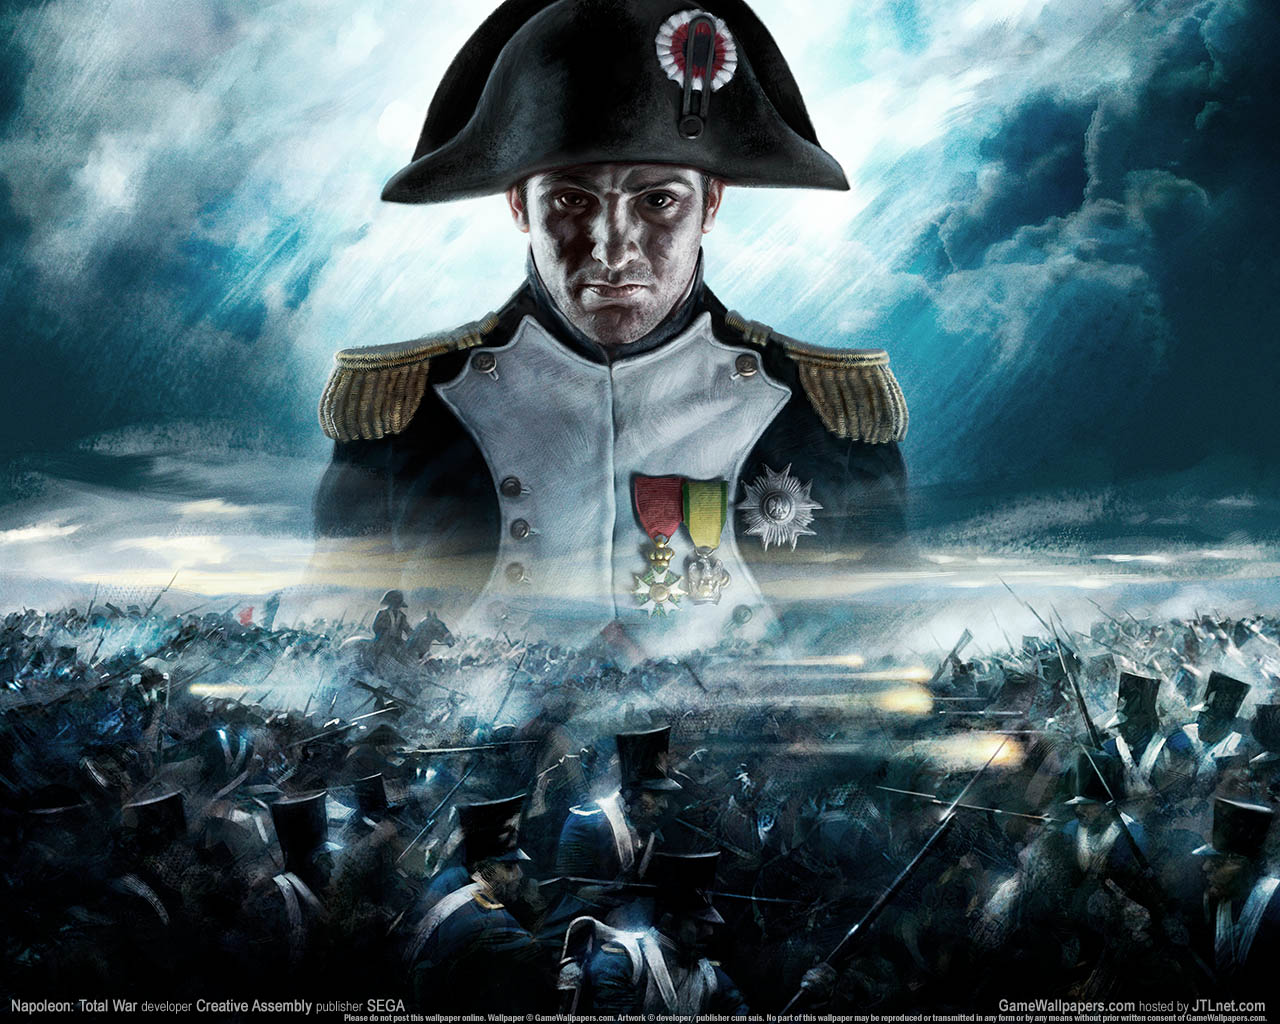 Napoleon%3A Total War fond d'cran 01 1280x1024